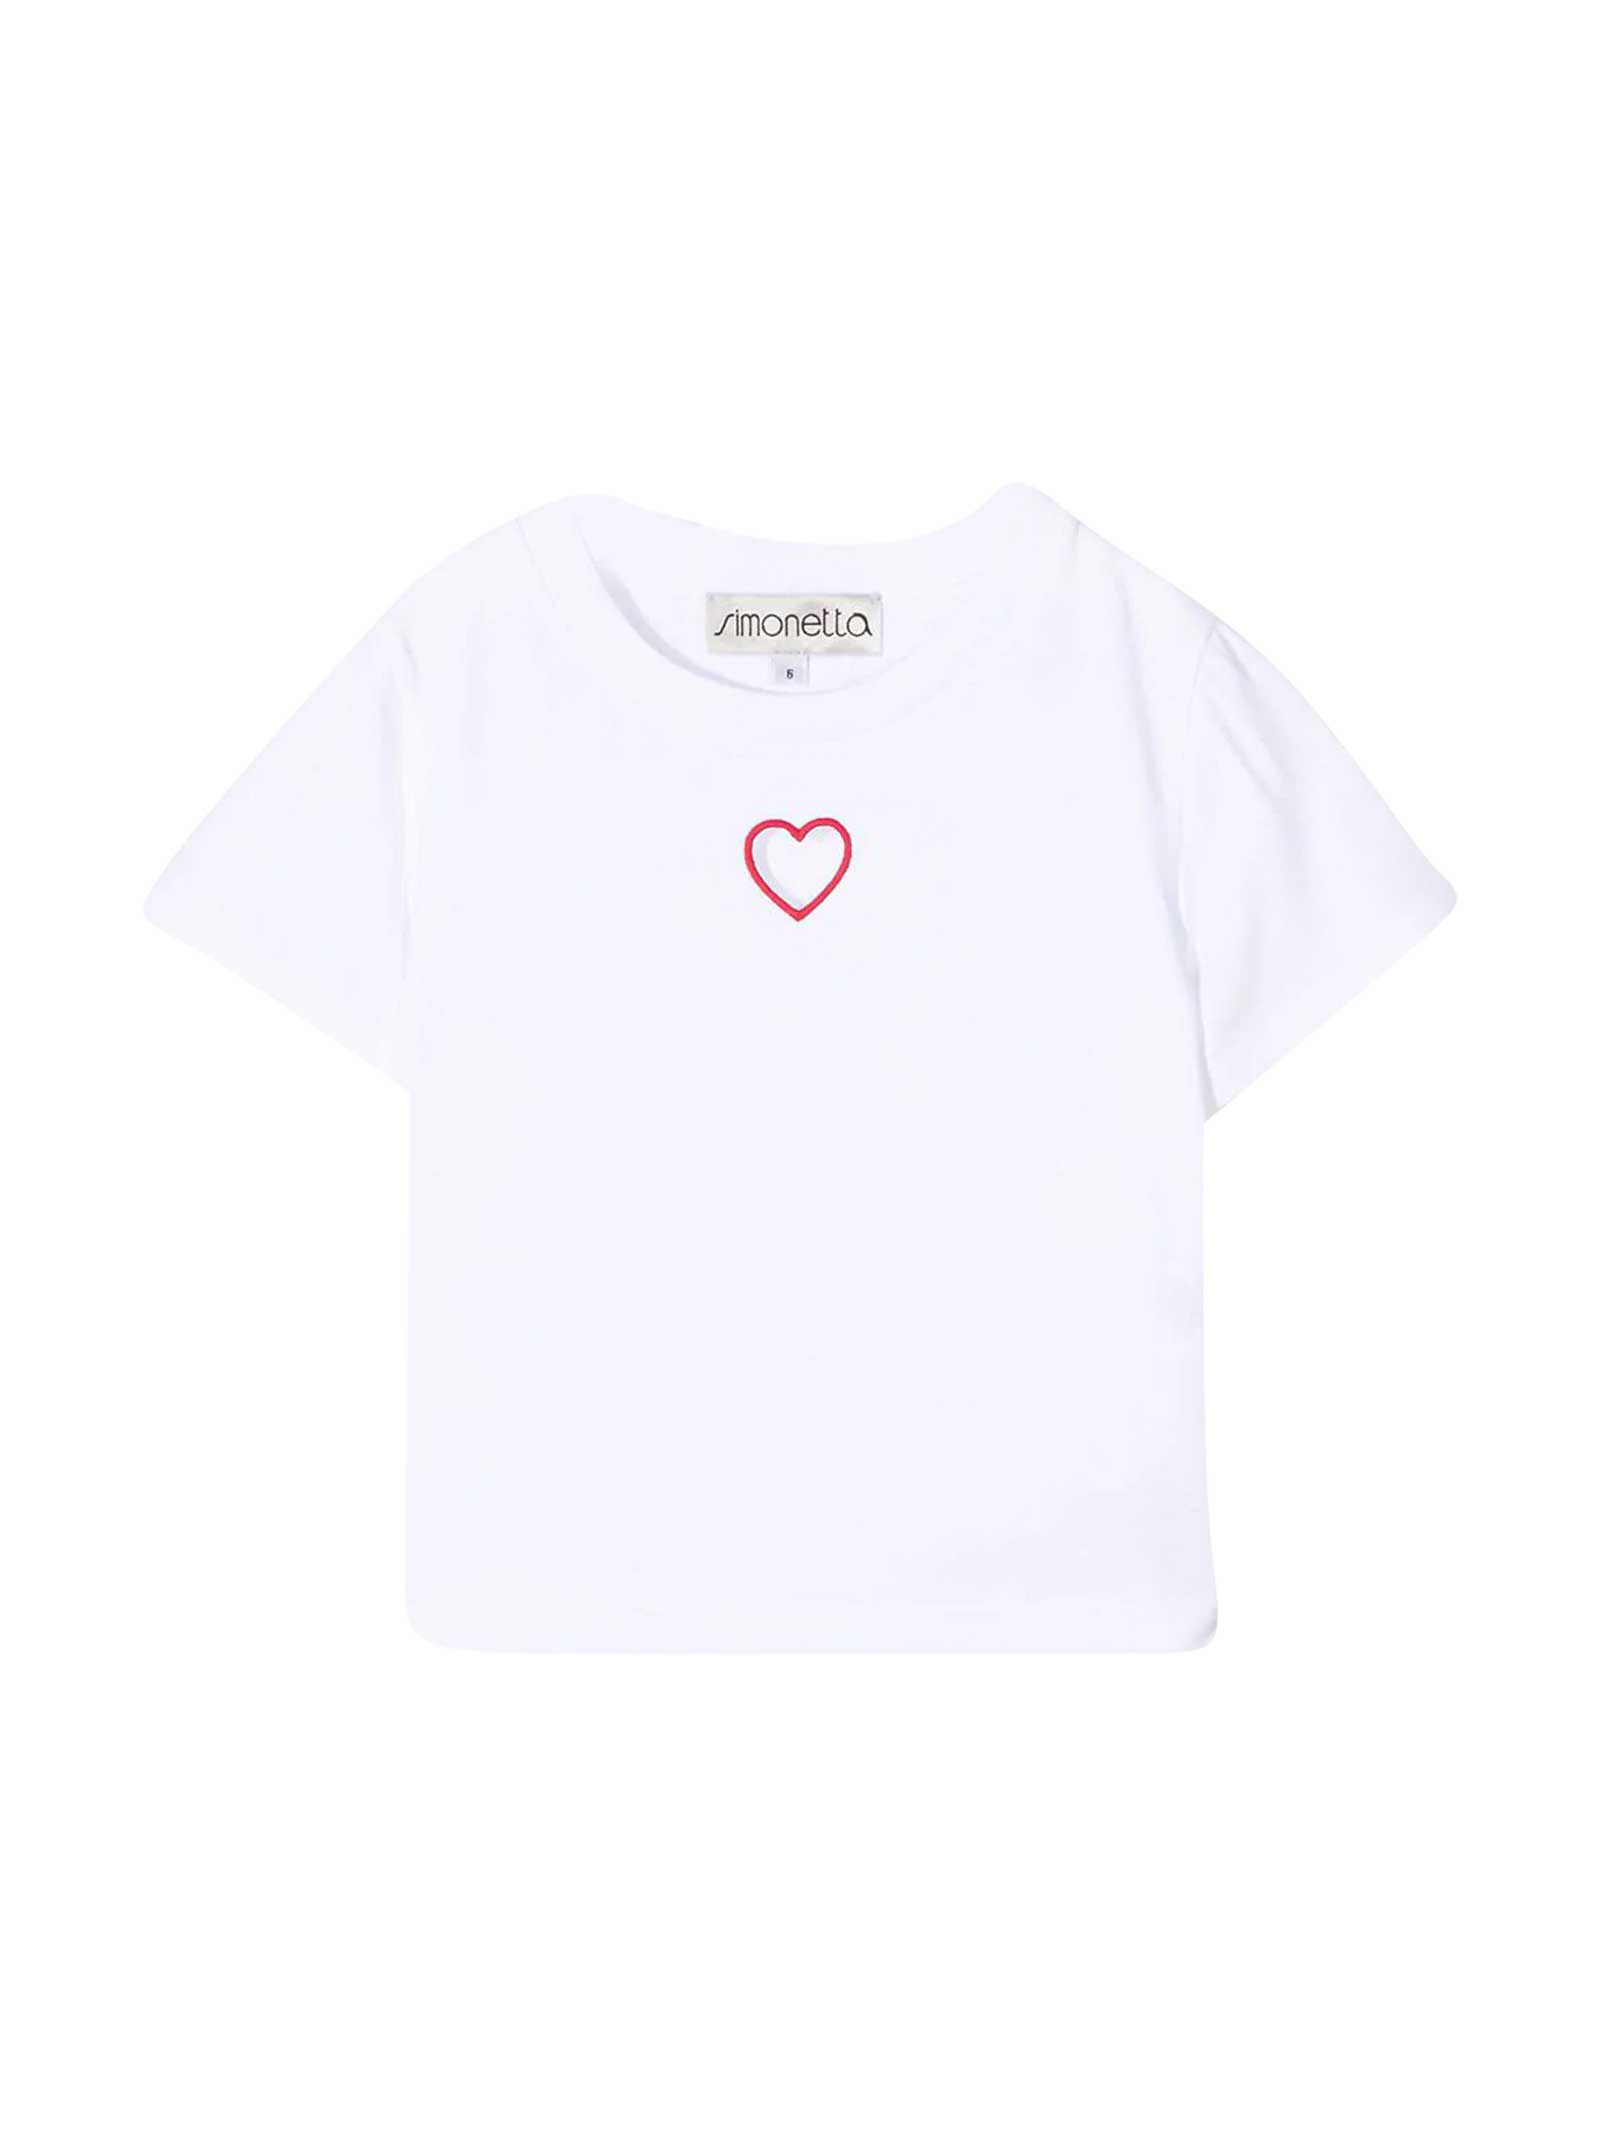 Simonetta White T-shirt